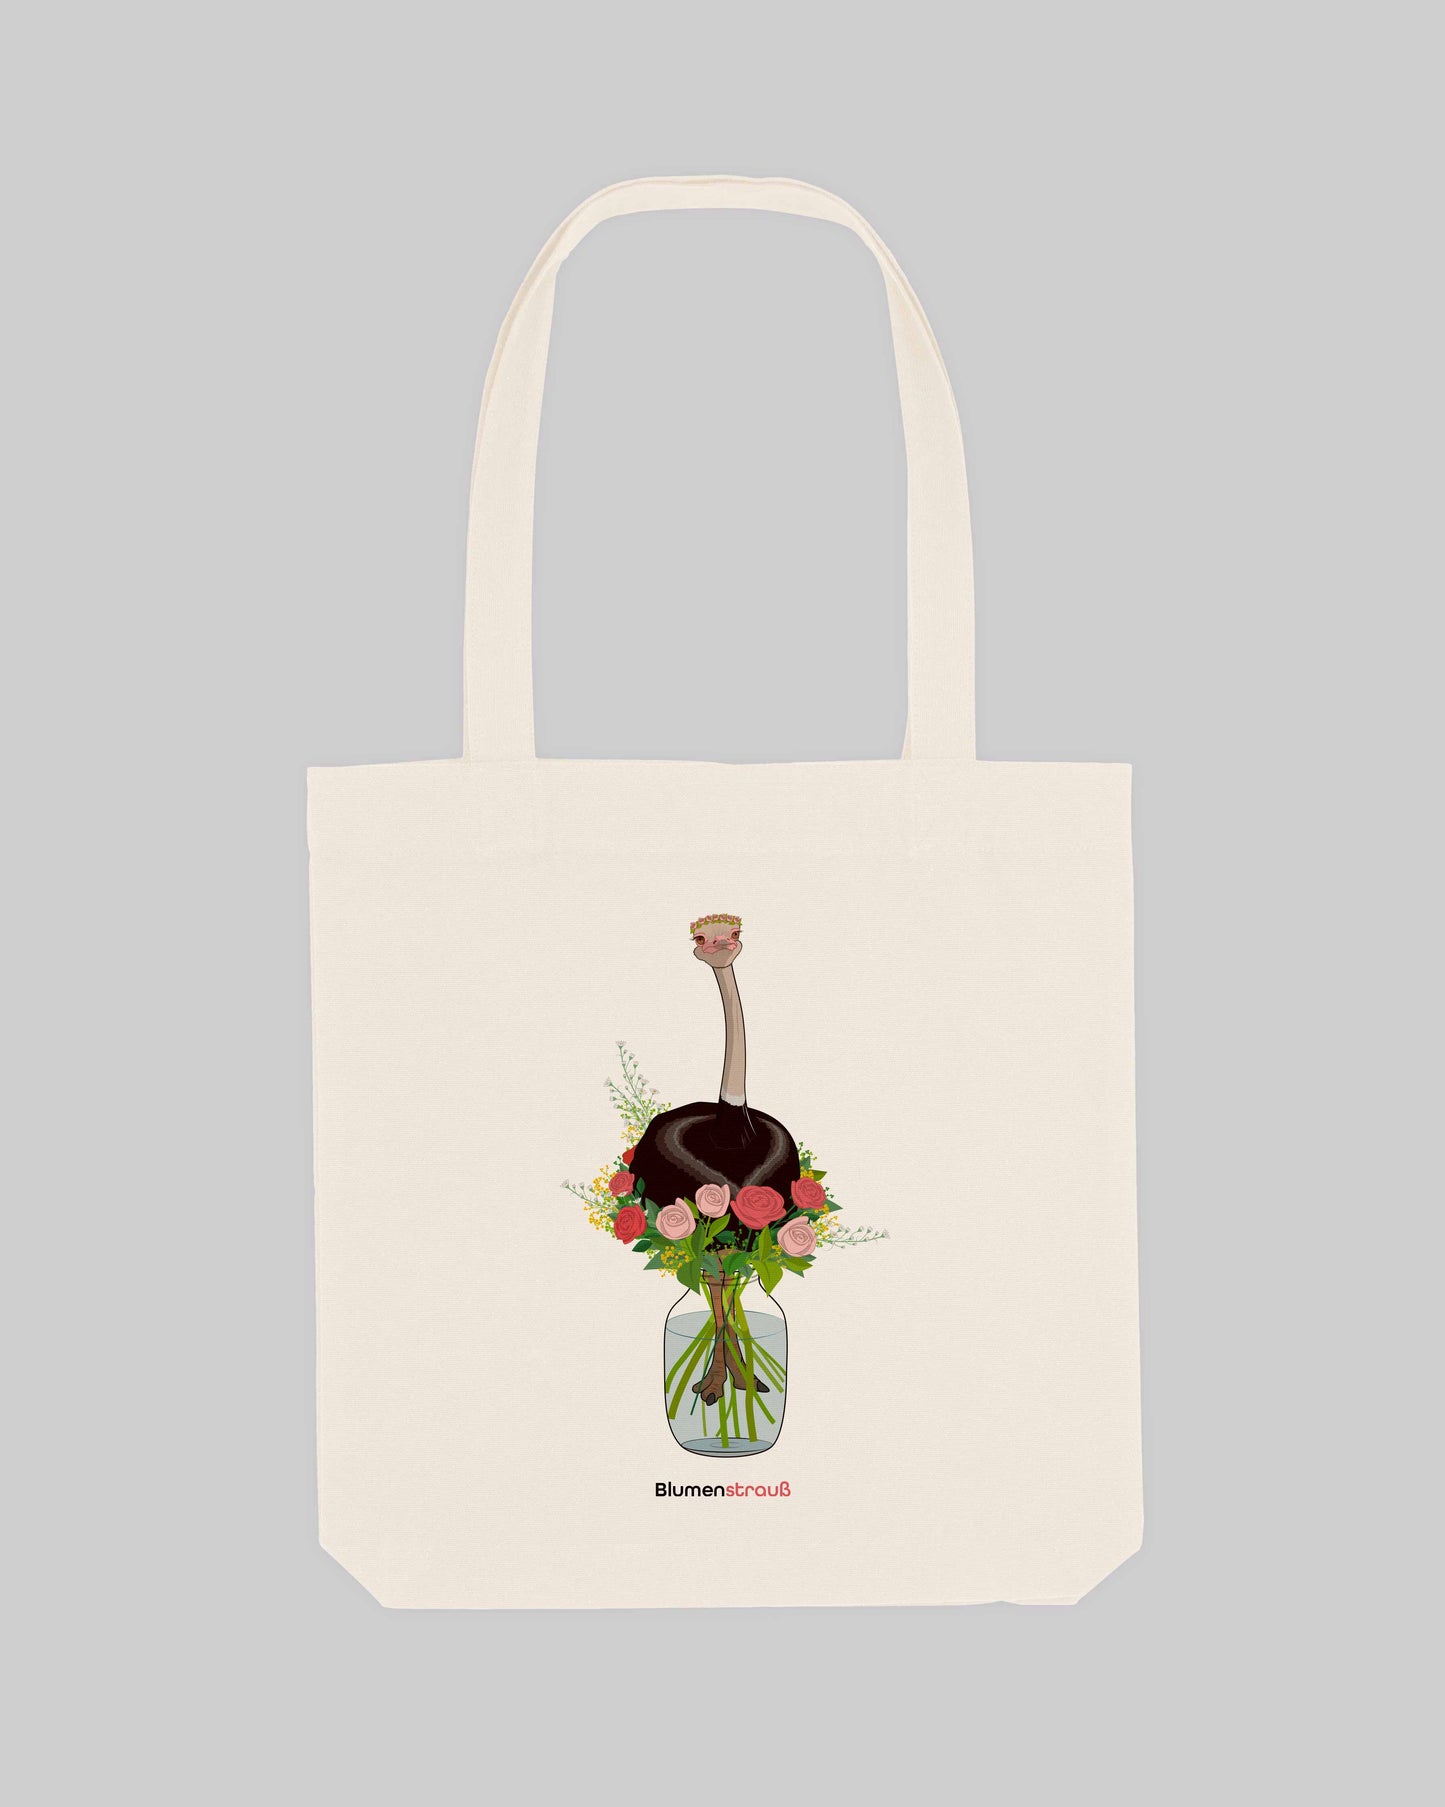 EINHORST® Stofftasche in der Farbe "Natural" mit dem Motiv "Blumenstrauß", Bild von Stofftasche von vorne